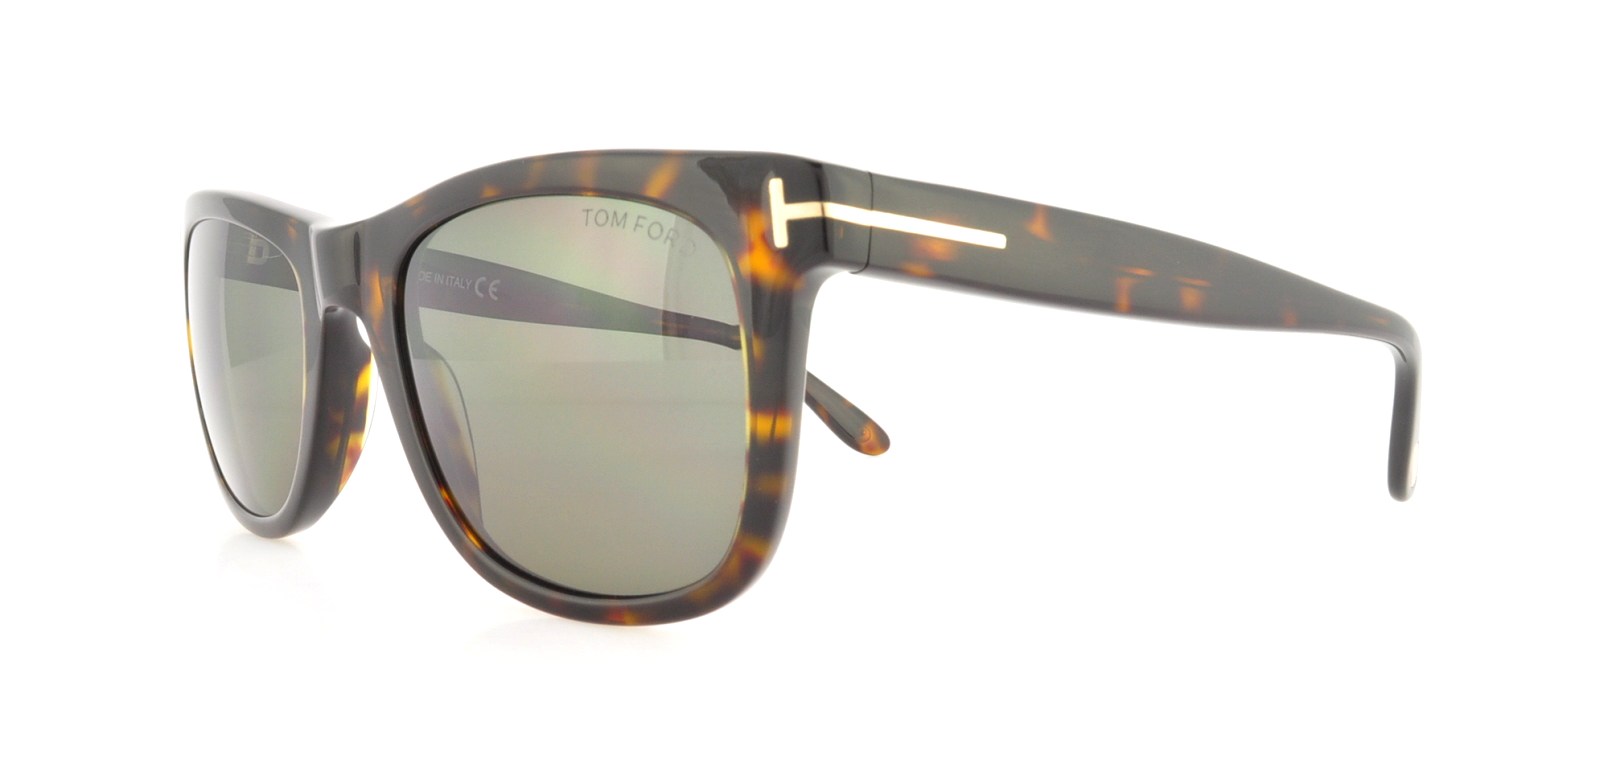 Designer Frames Outlet. Tom Ford Sunglasses FT0336 Leo